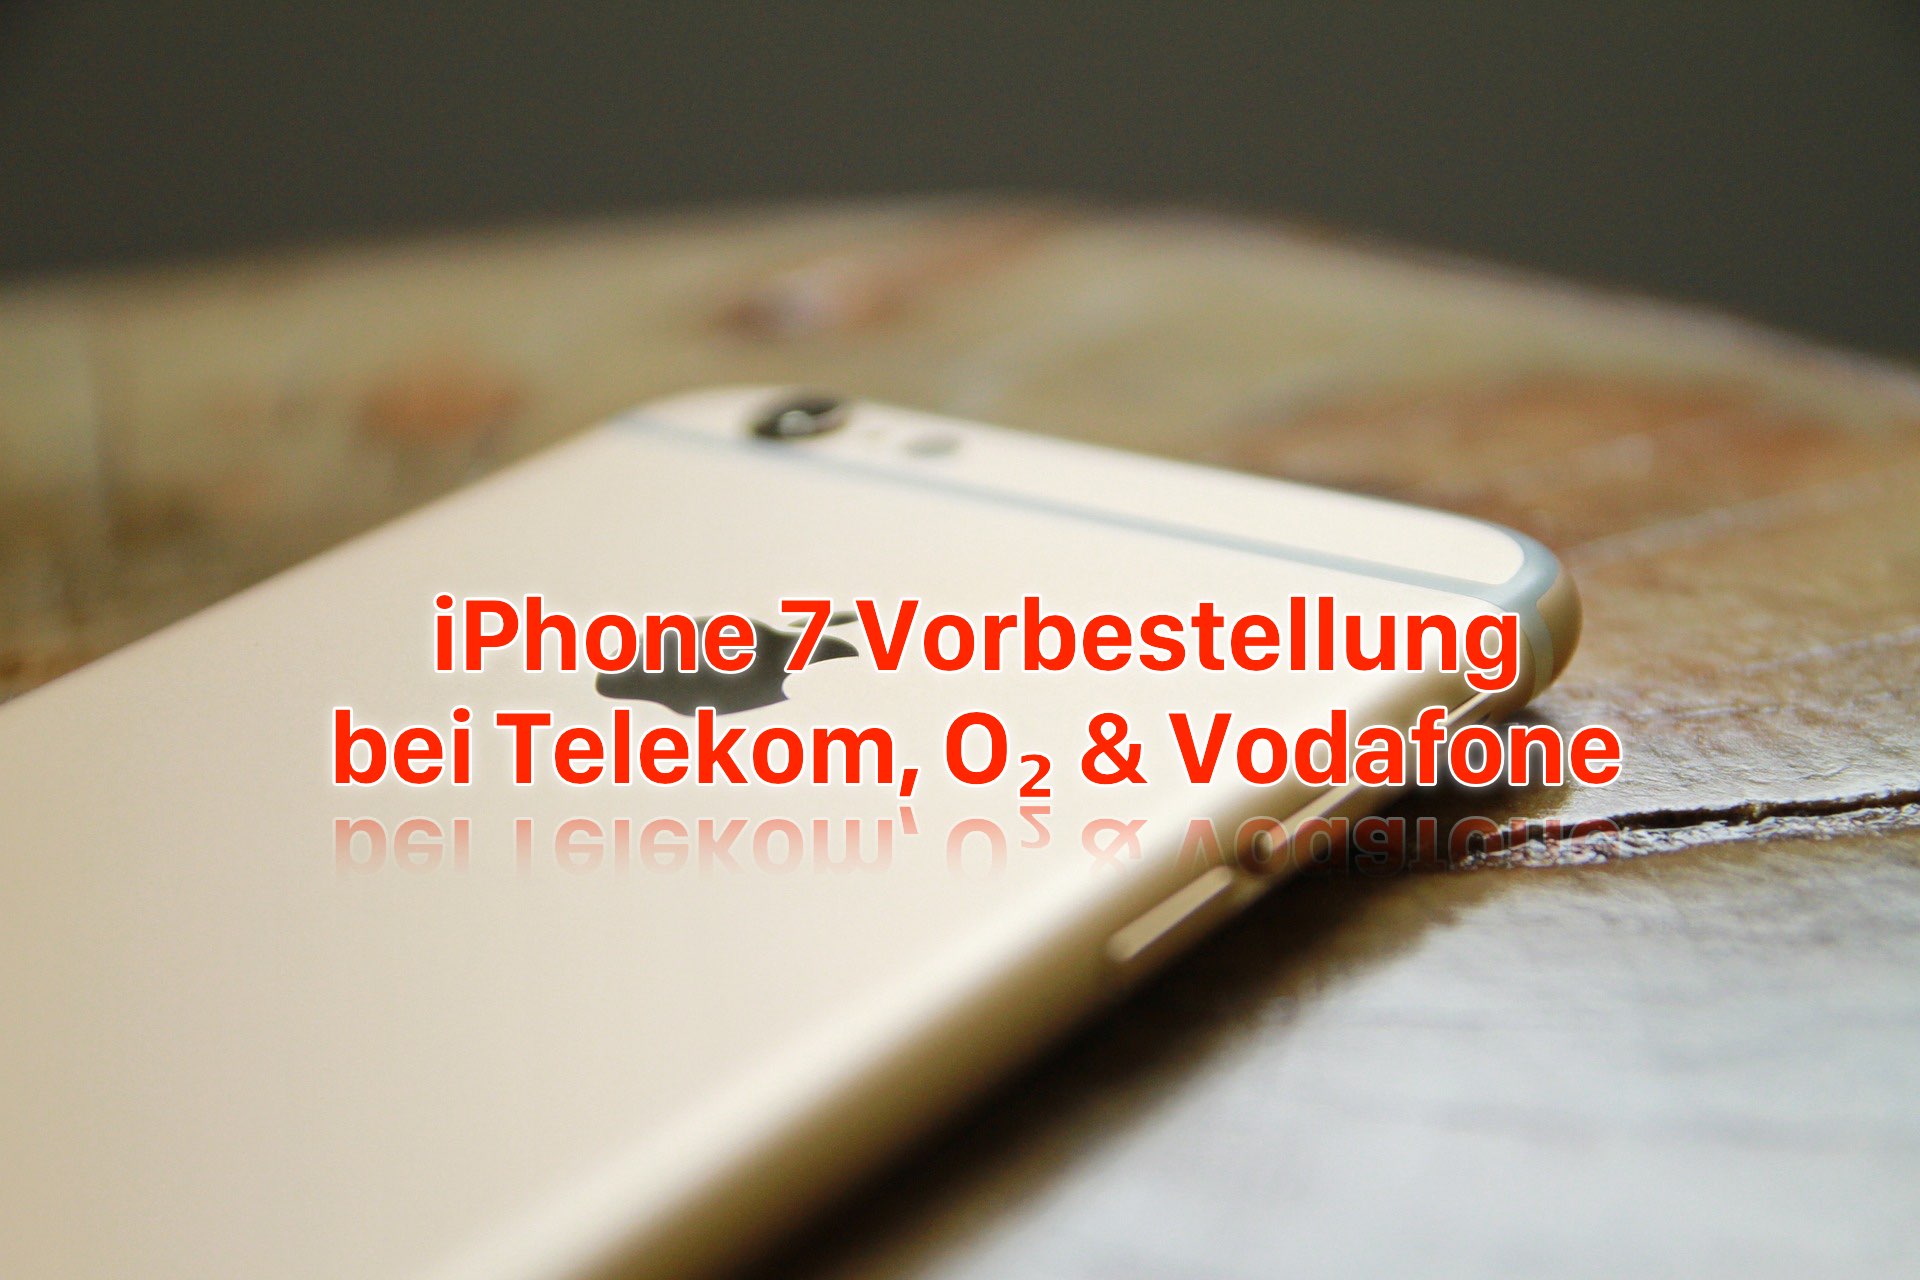 iPhone 7 Vorbestellung: bei Telekom, O2 und Vodafone iPhone 7 reservieren! 2